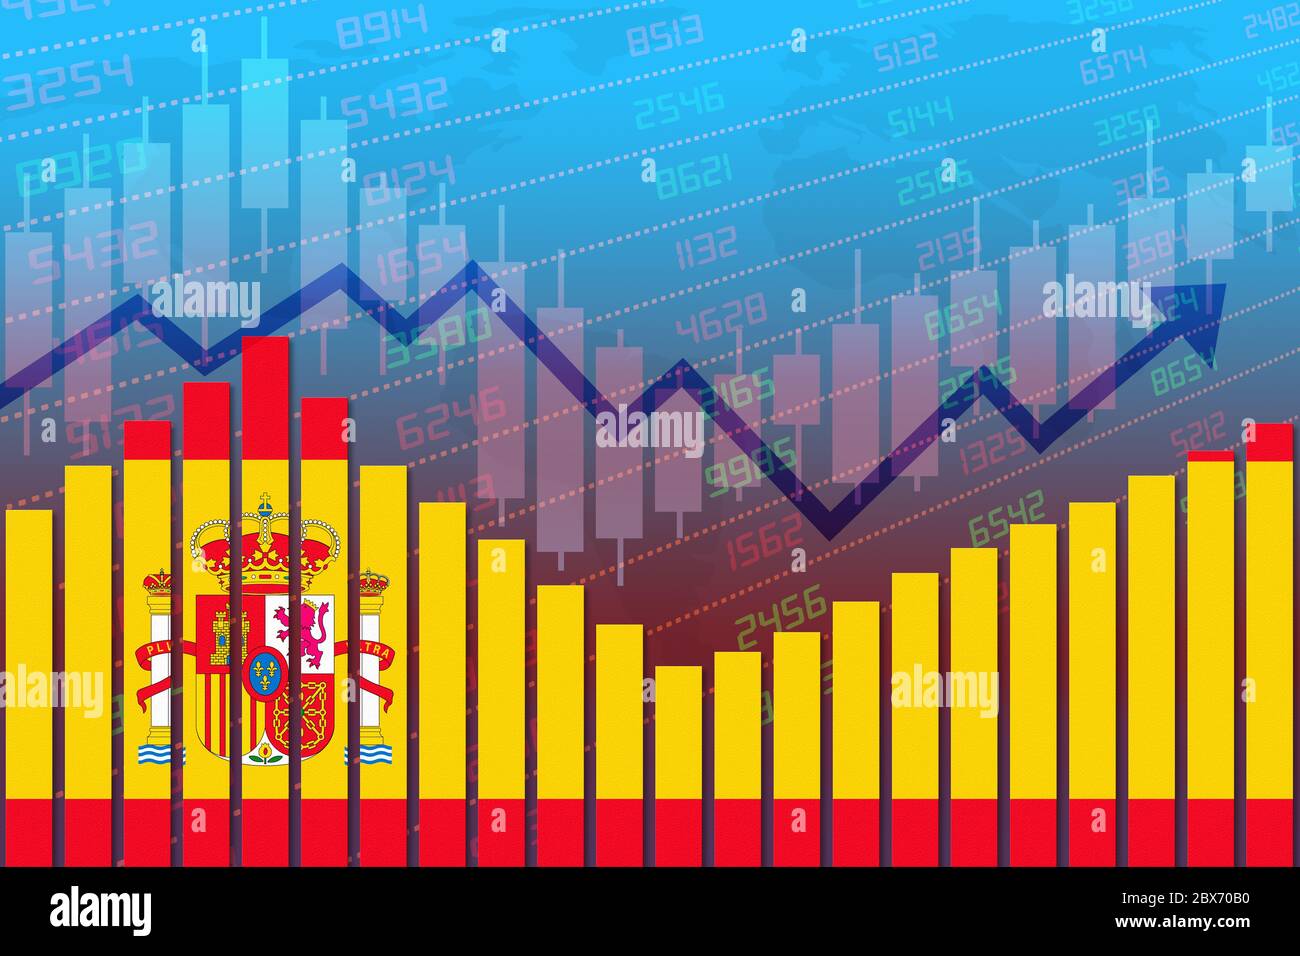 Drapeau de l'Espagne sur le diagramme à barres concept de reprise économique et d'amélioration des affaires après la crise comme Covid-19 ou d'autres catastrophes comme l'économie et le bussin Banque D'Images